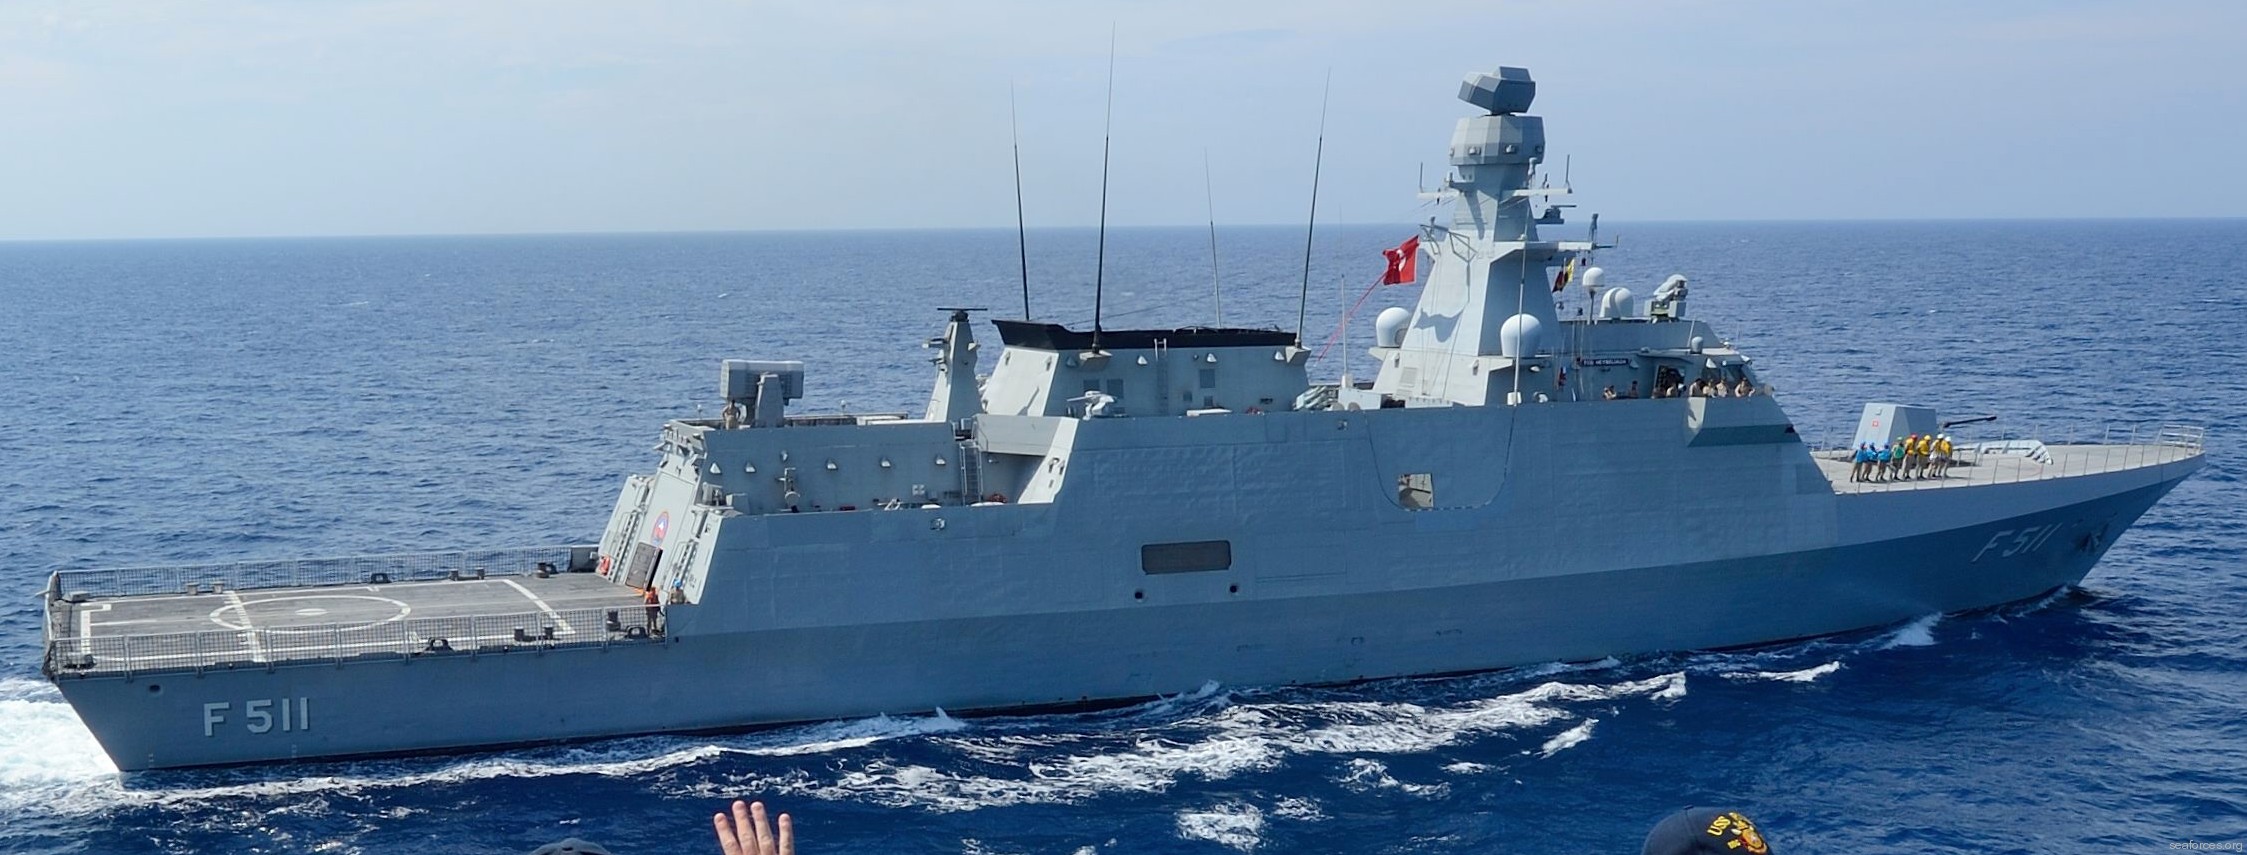 f-511 tcg heybeliada ada class corvette milgem turkish navy türk deniz kuvvetleri 02